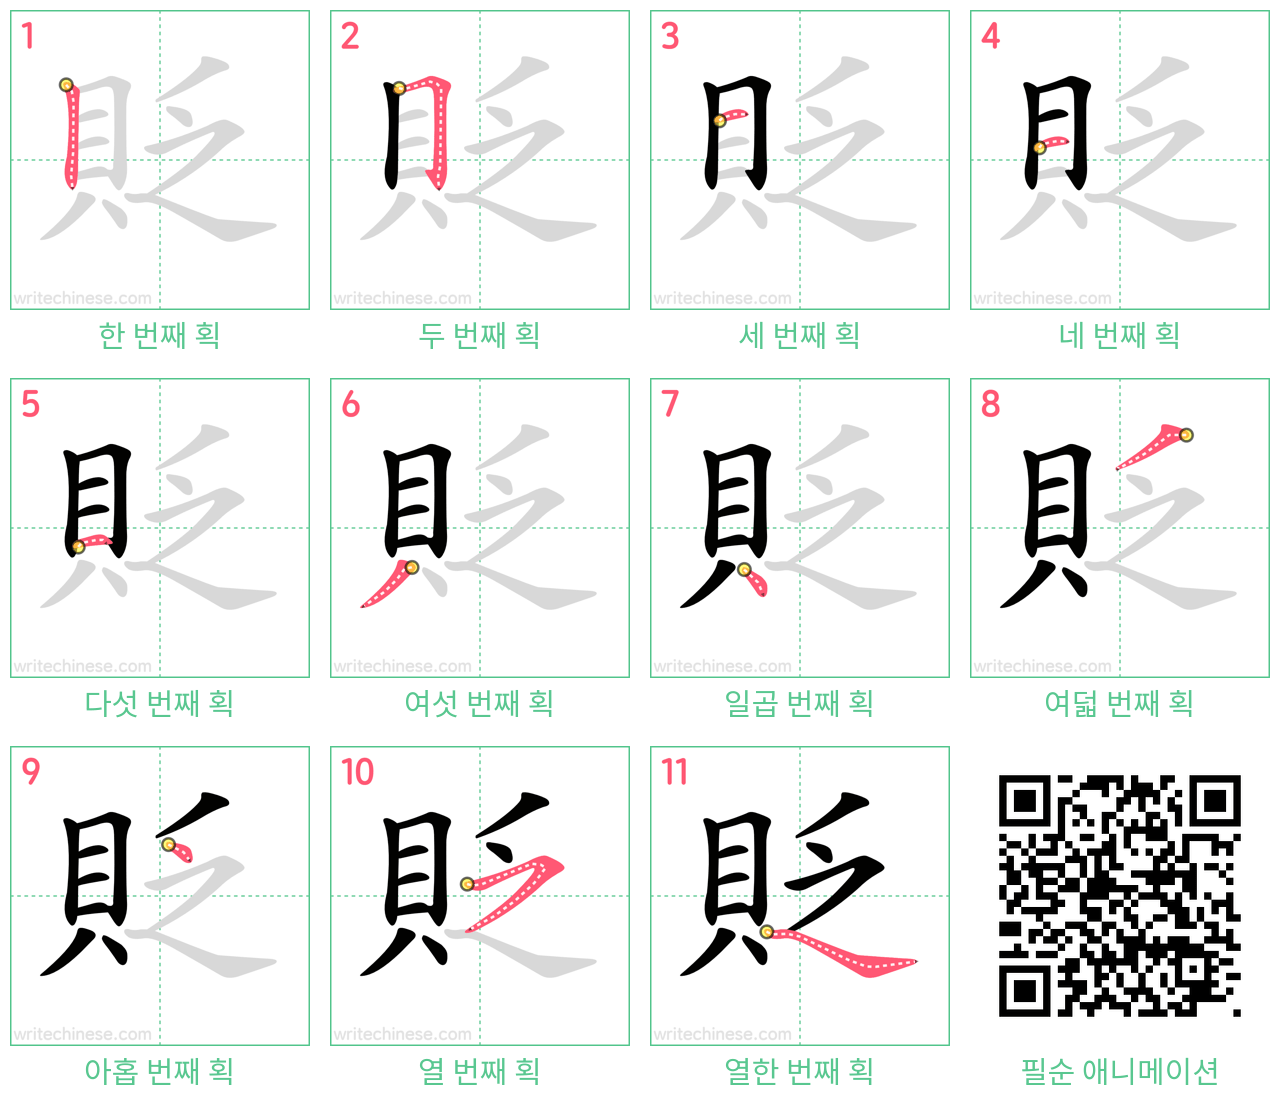 貶 step-by-step stroke order diagrams